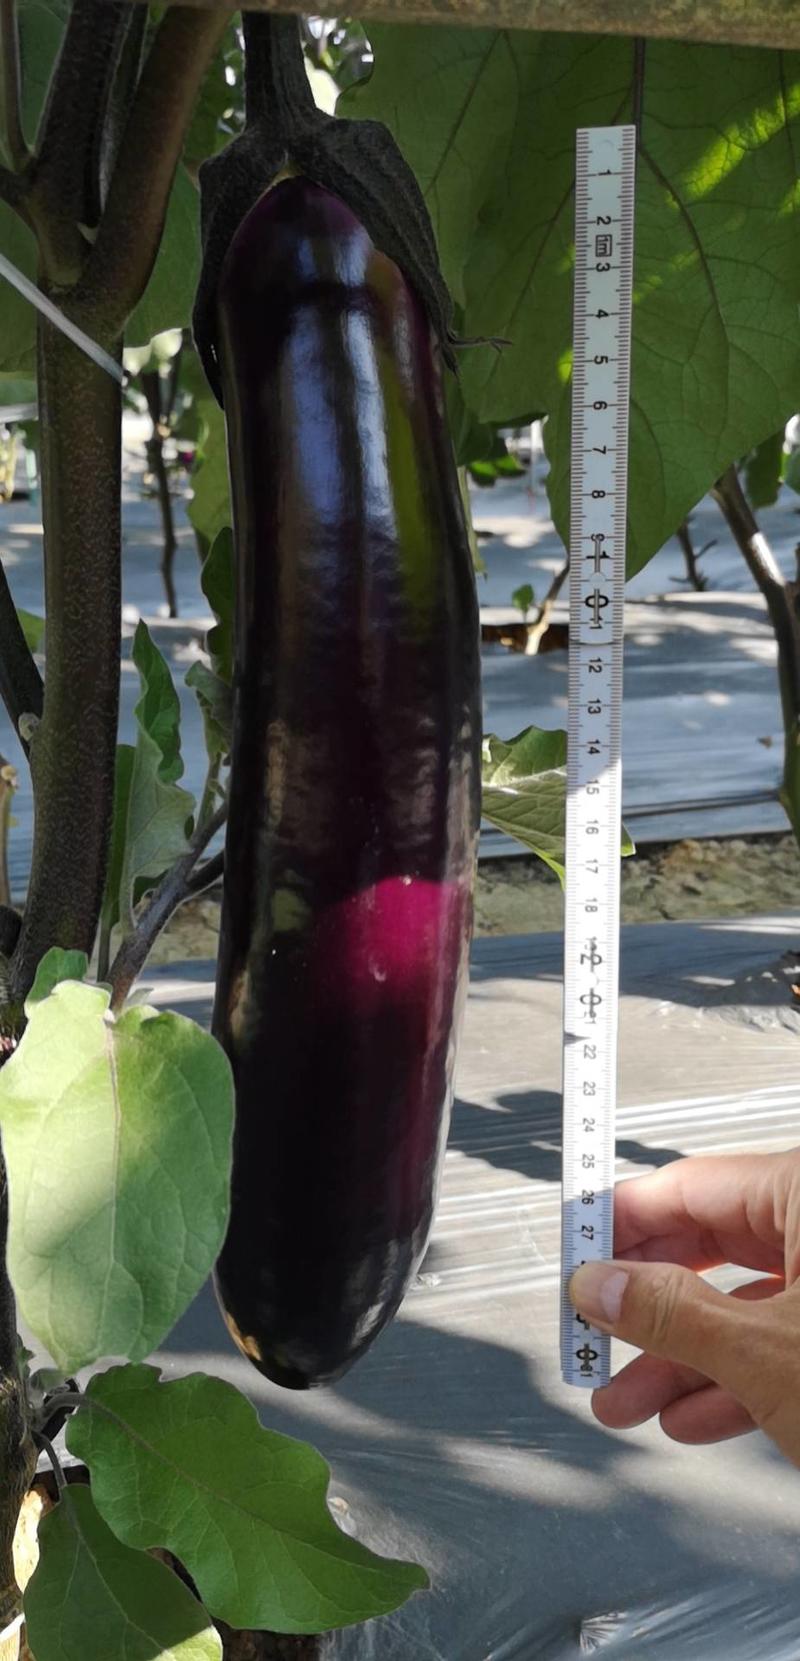 新型紫红茄黑马二号中茄肉质淡绿口感细滑